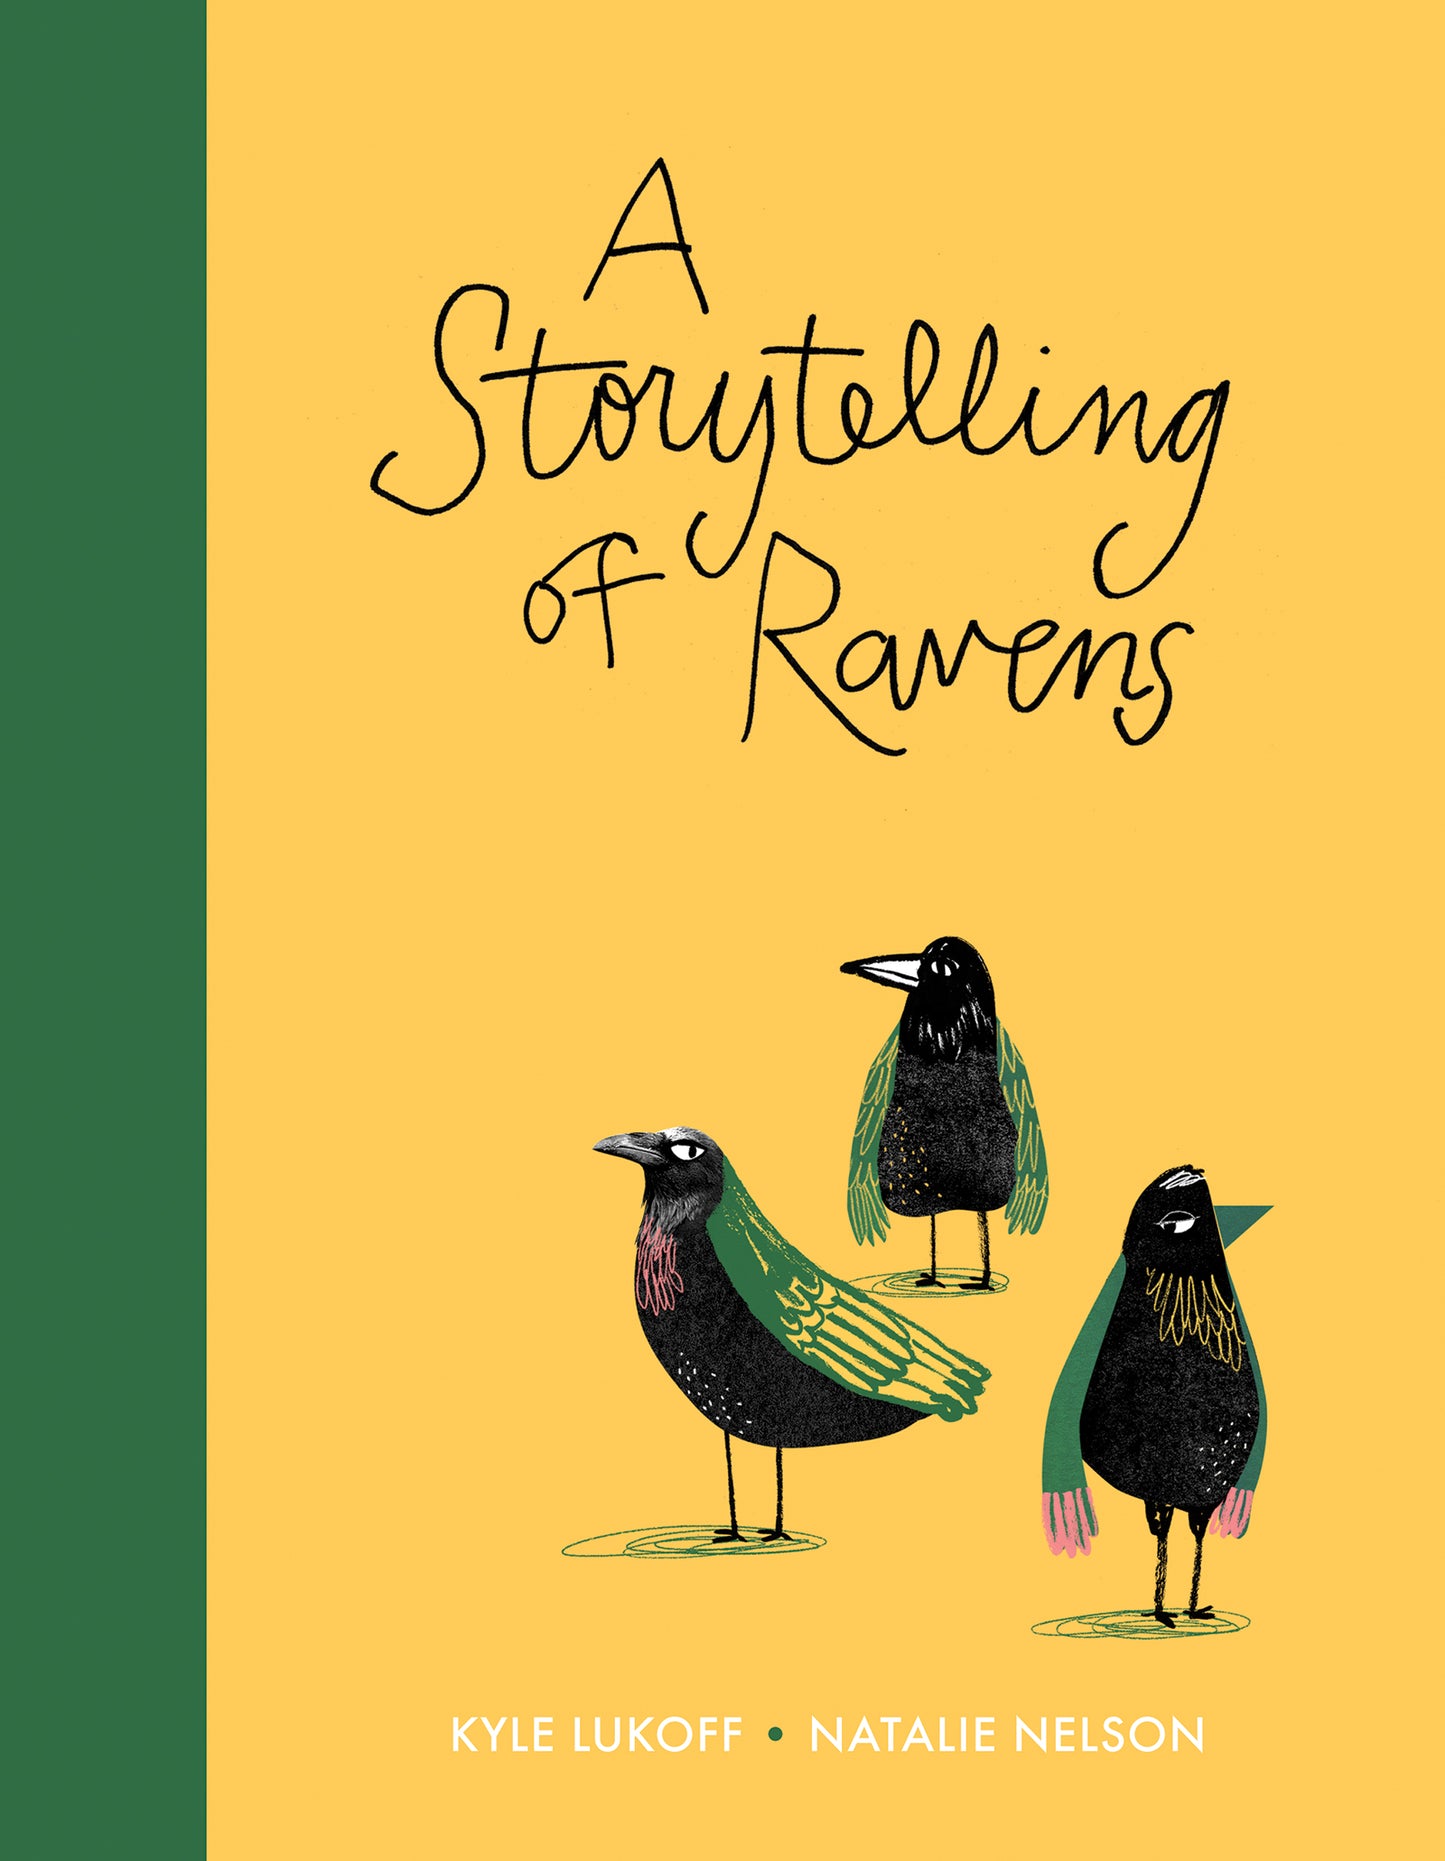 Storytelling of Ravens, A